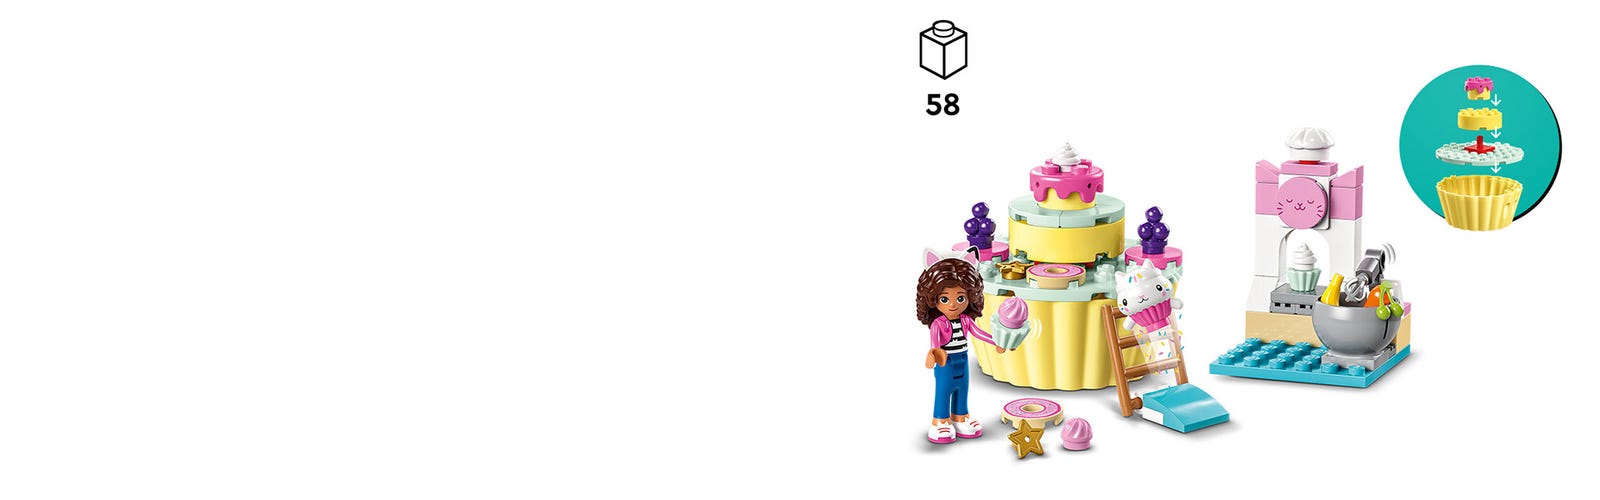 Bakey with Cakey Fun  LEGO Gabby's Dollhouse build & review 